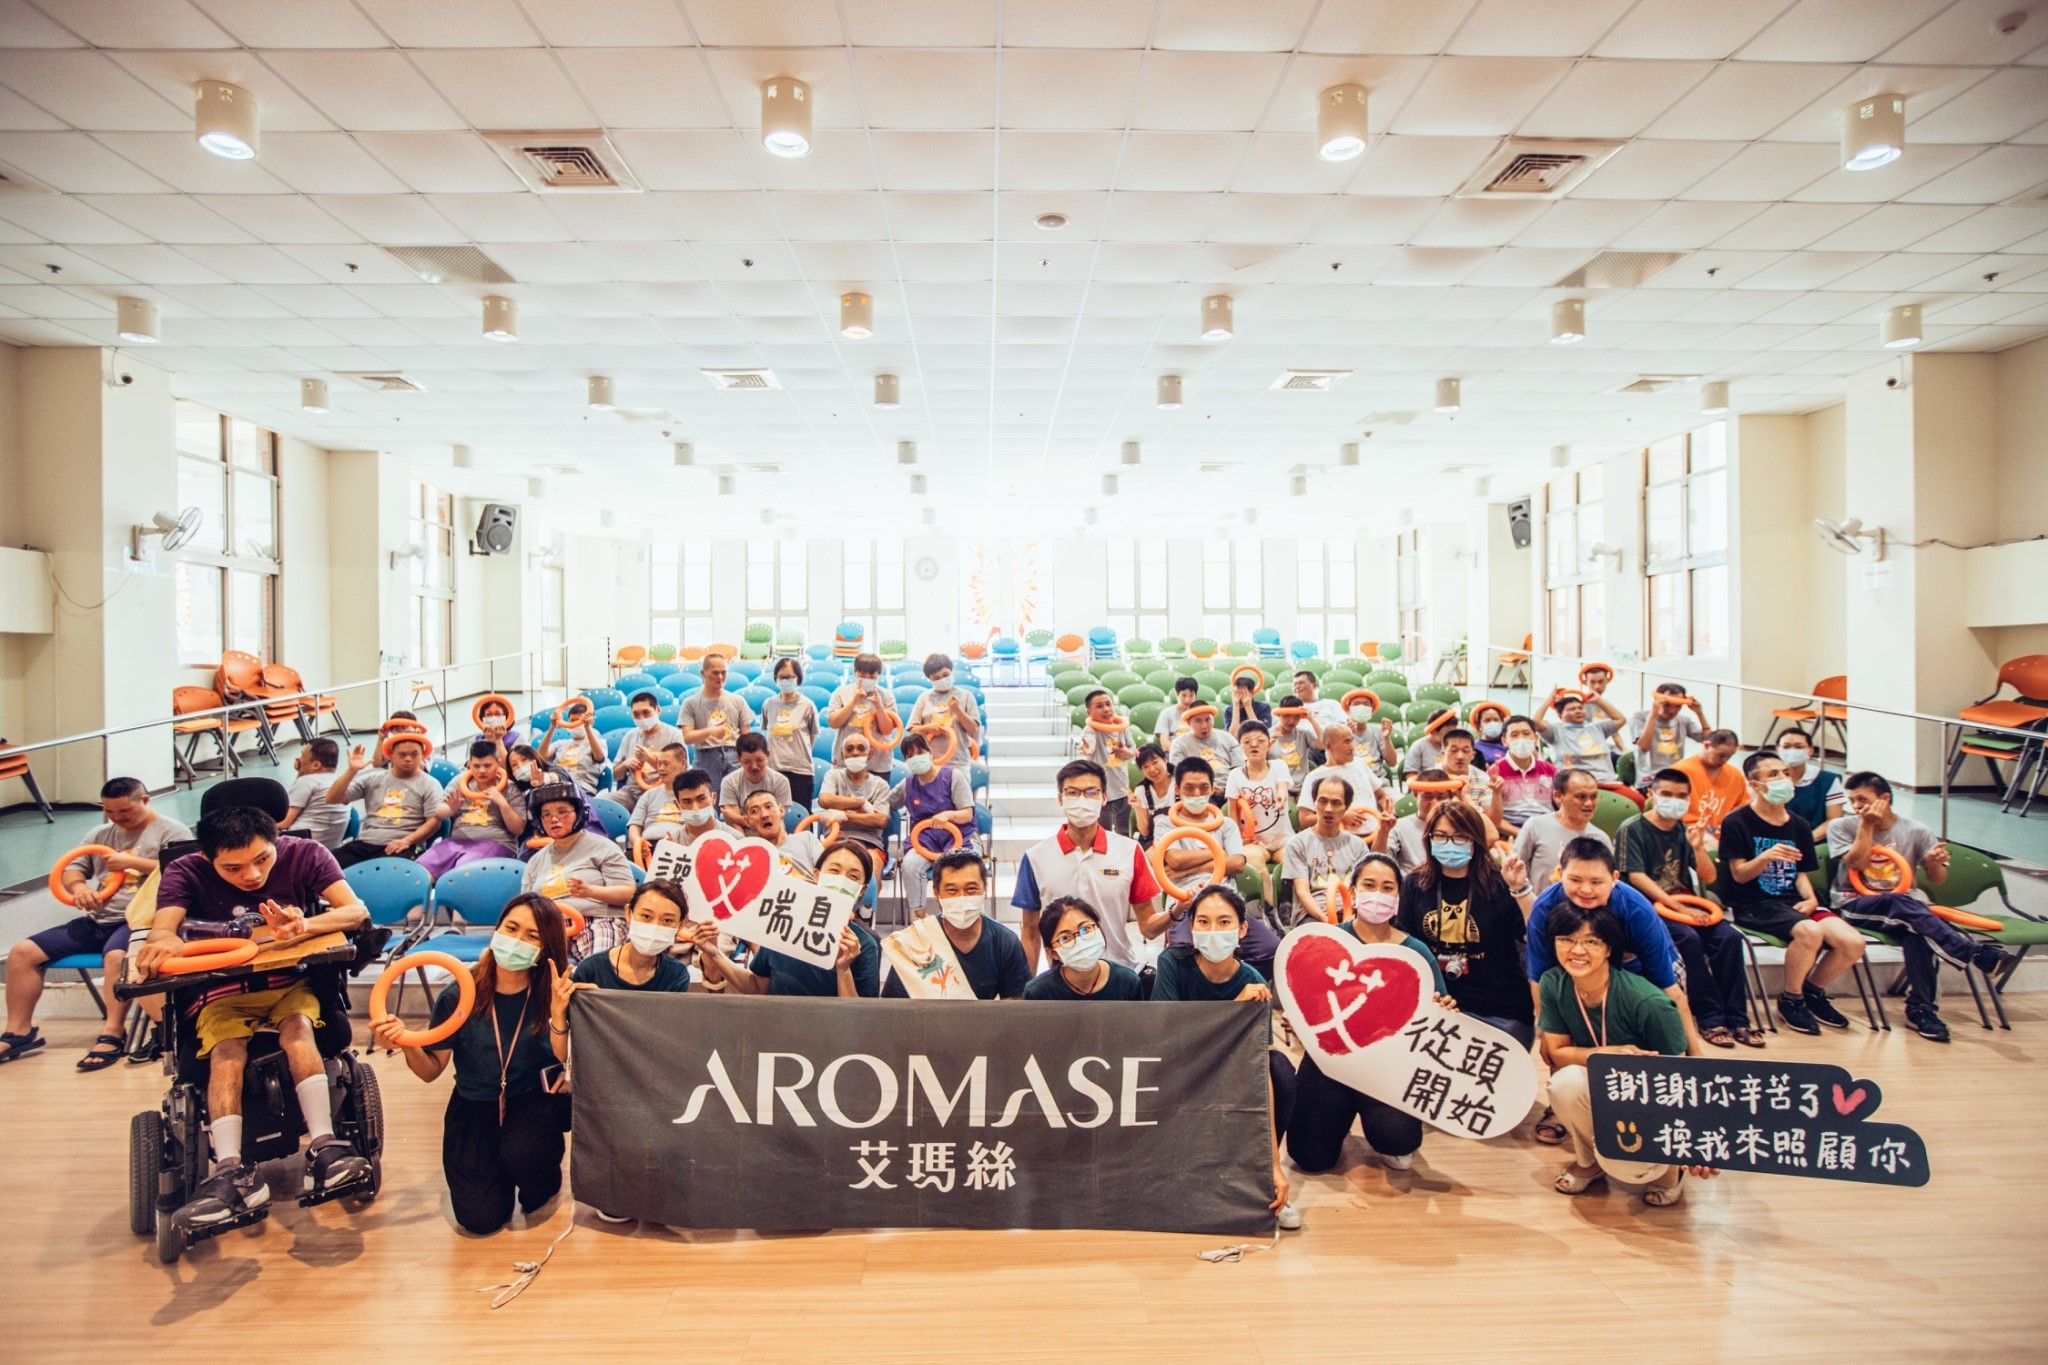 AROMASE艾瑪絲自107年開始發起「讓艾喘息」公益行動，關護守護「看不見的缺角守護」，將守護頭皮的初心延伸至社會關懷，號召企業及上下游廠商響應加入守護行動。